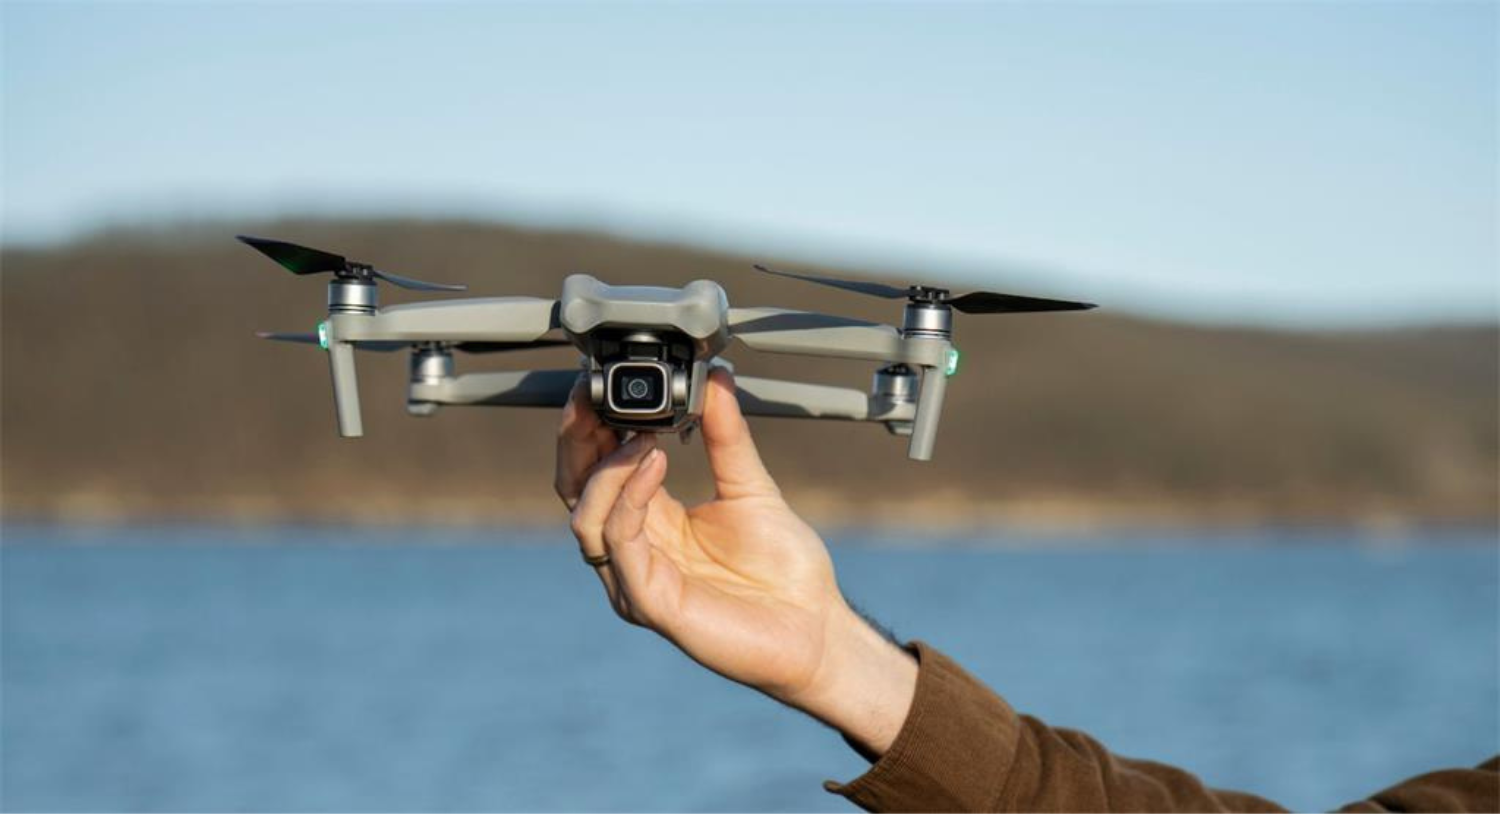 Savjeti za kupovinu drona - Mikronis.hr